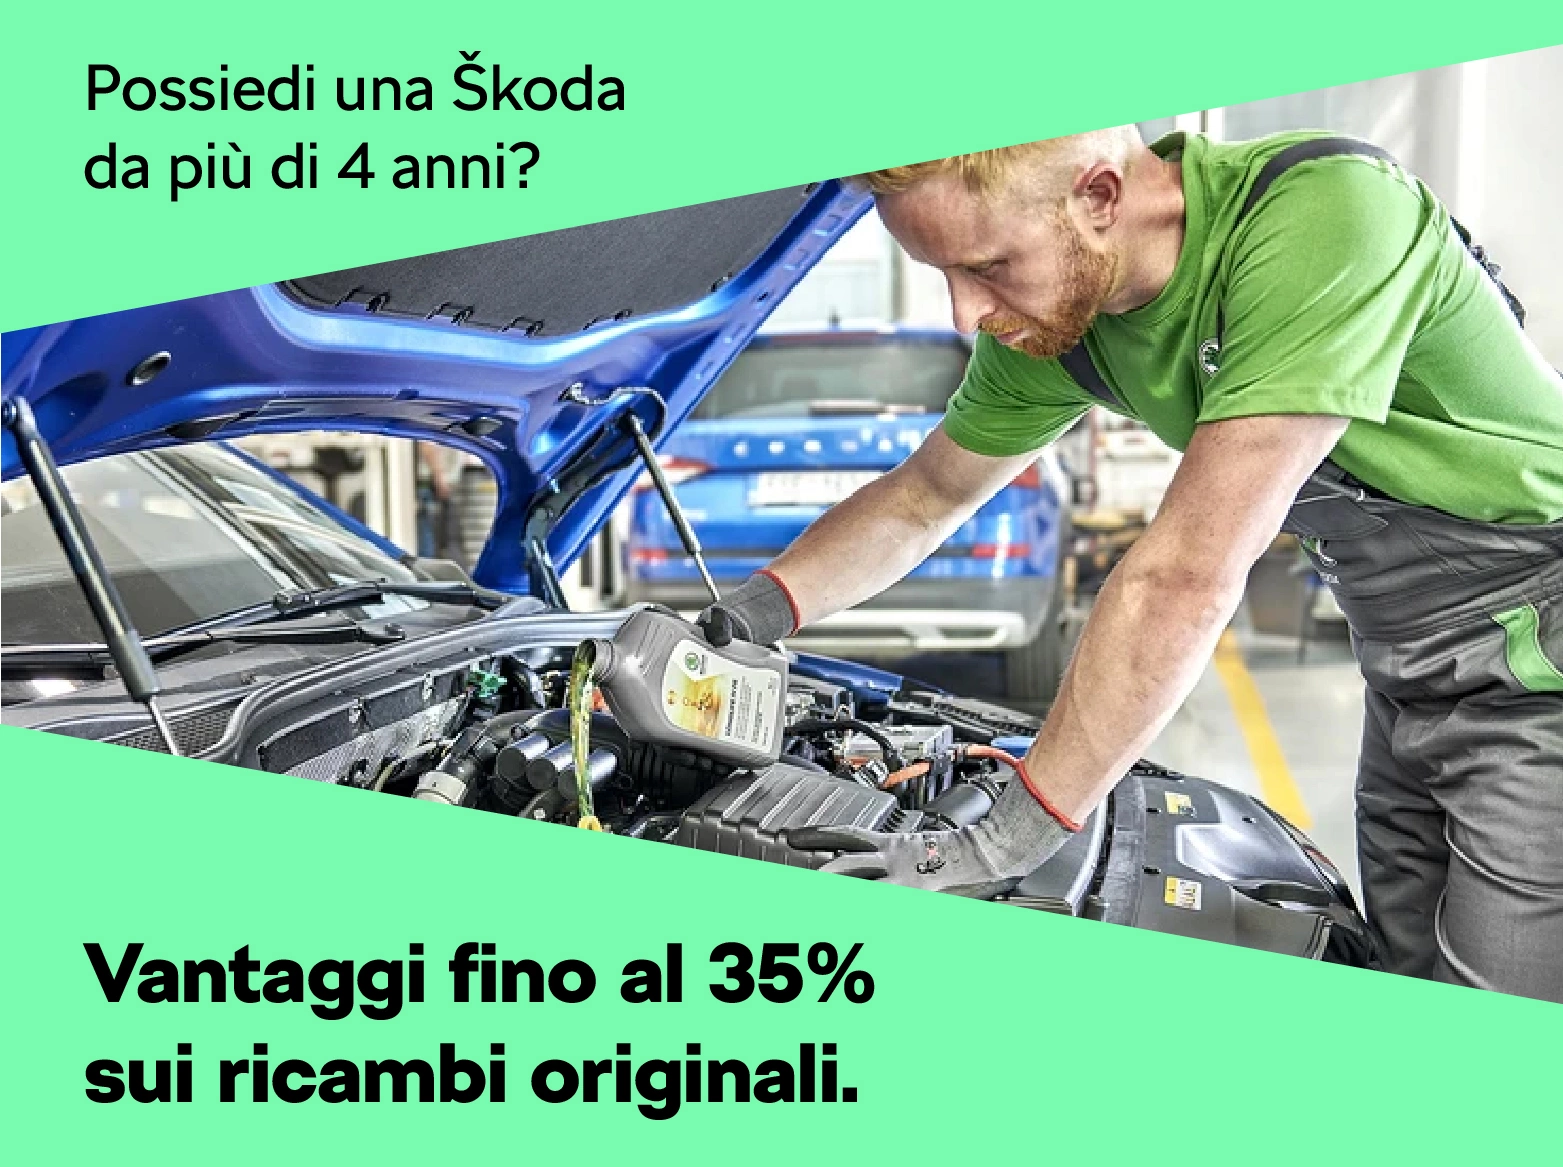 Promozione ricambi originali Škoda